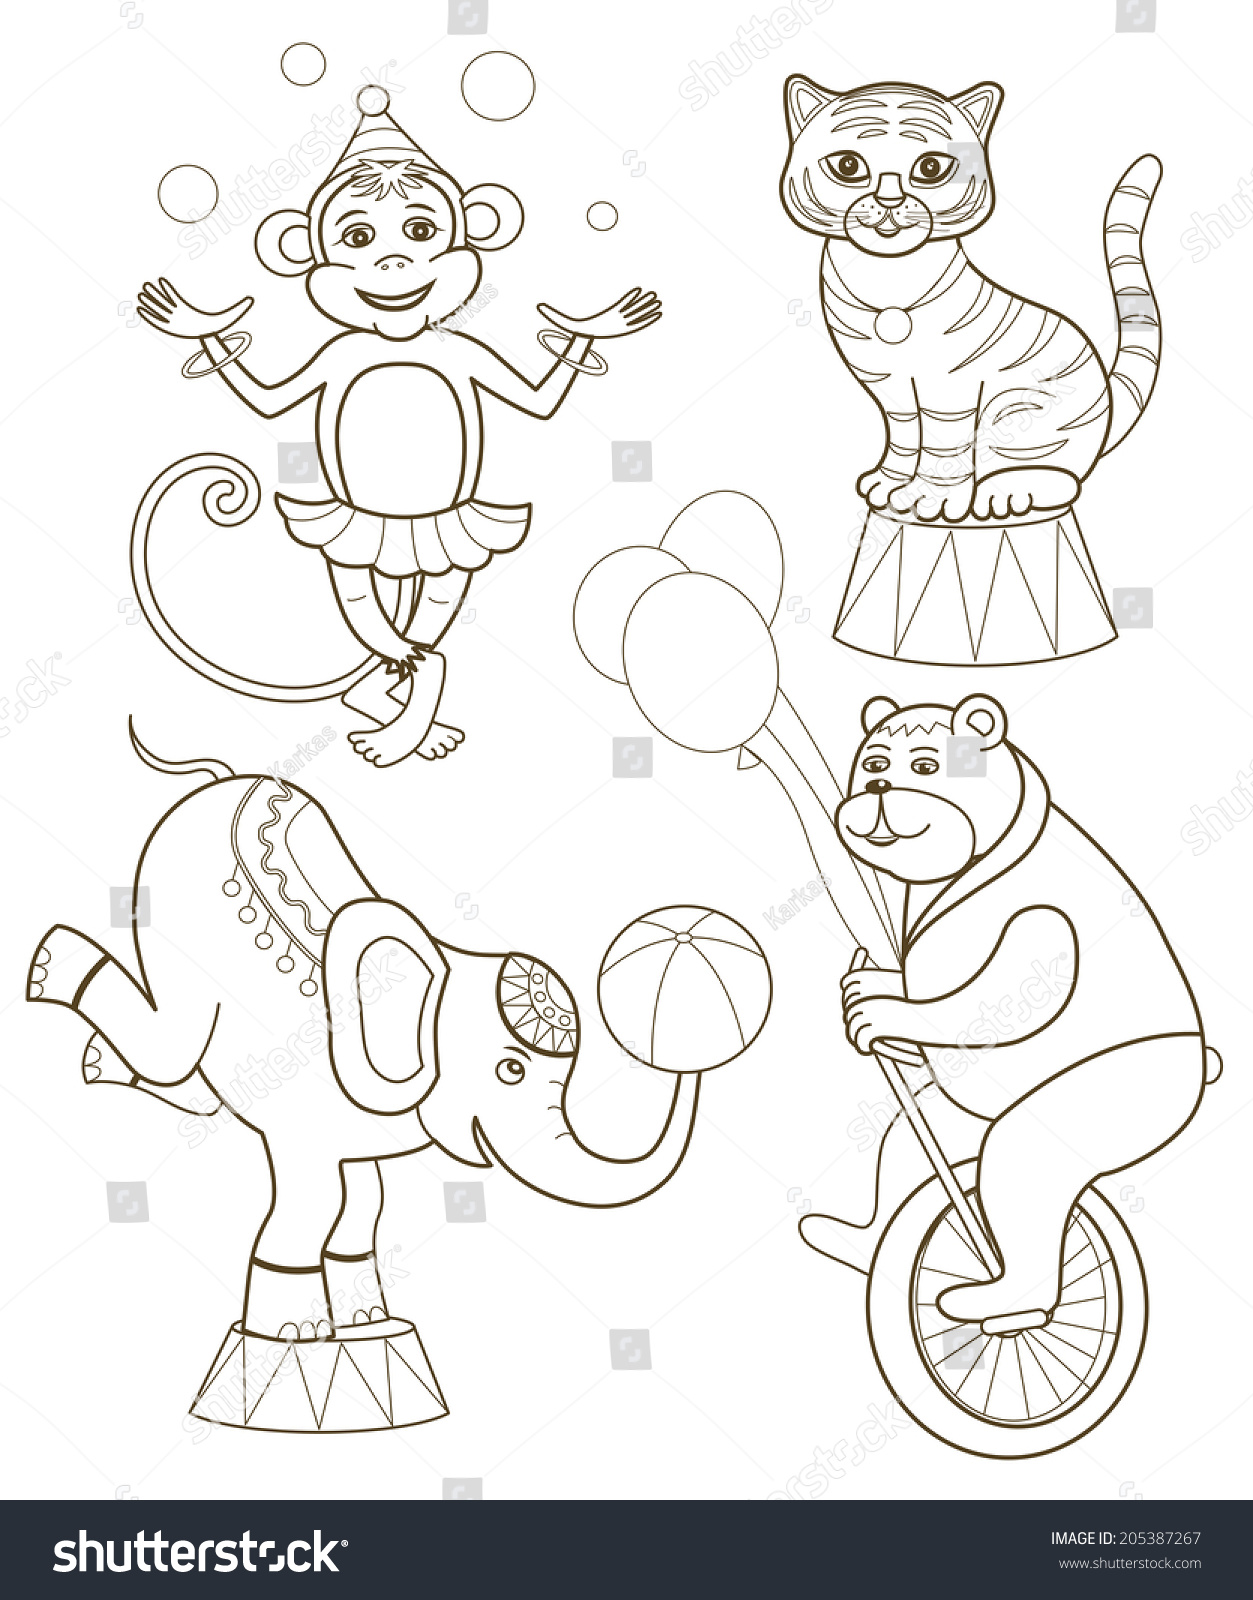 Цирковые персонажи для рисования